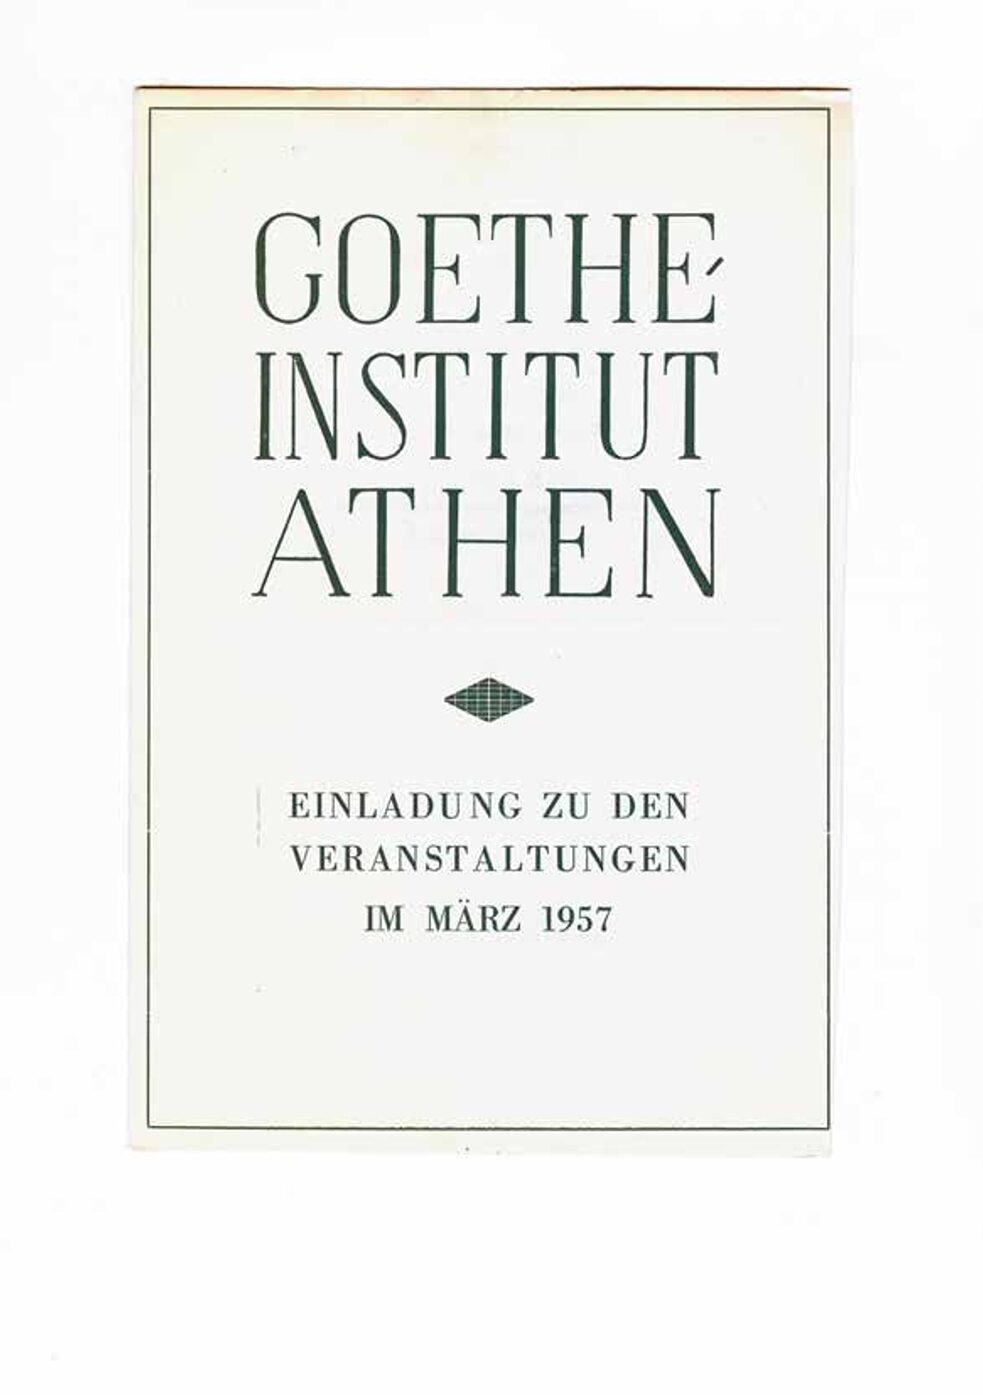 Einladung des Goethe-Instituts Athen, März 1957.